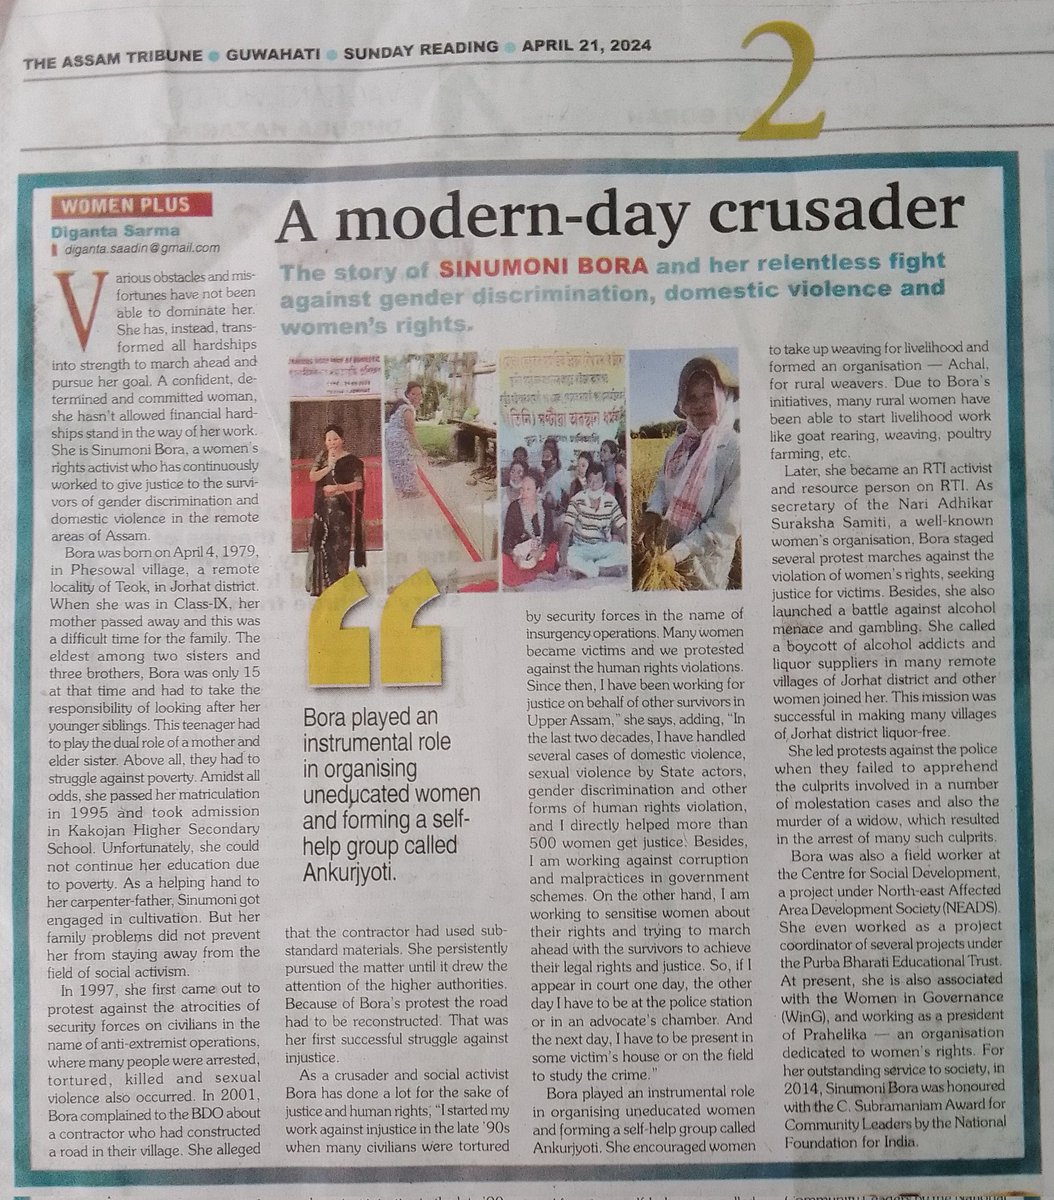 my article at Assam Tribune on social crusader's life and struggle in rural Assam. #HumanRights #genderdiscrimination #gendersensitivity #genderviolence